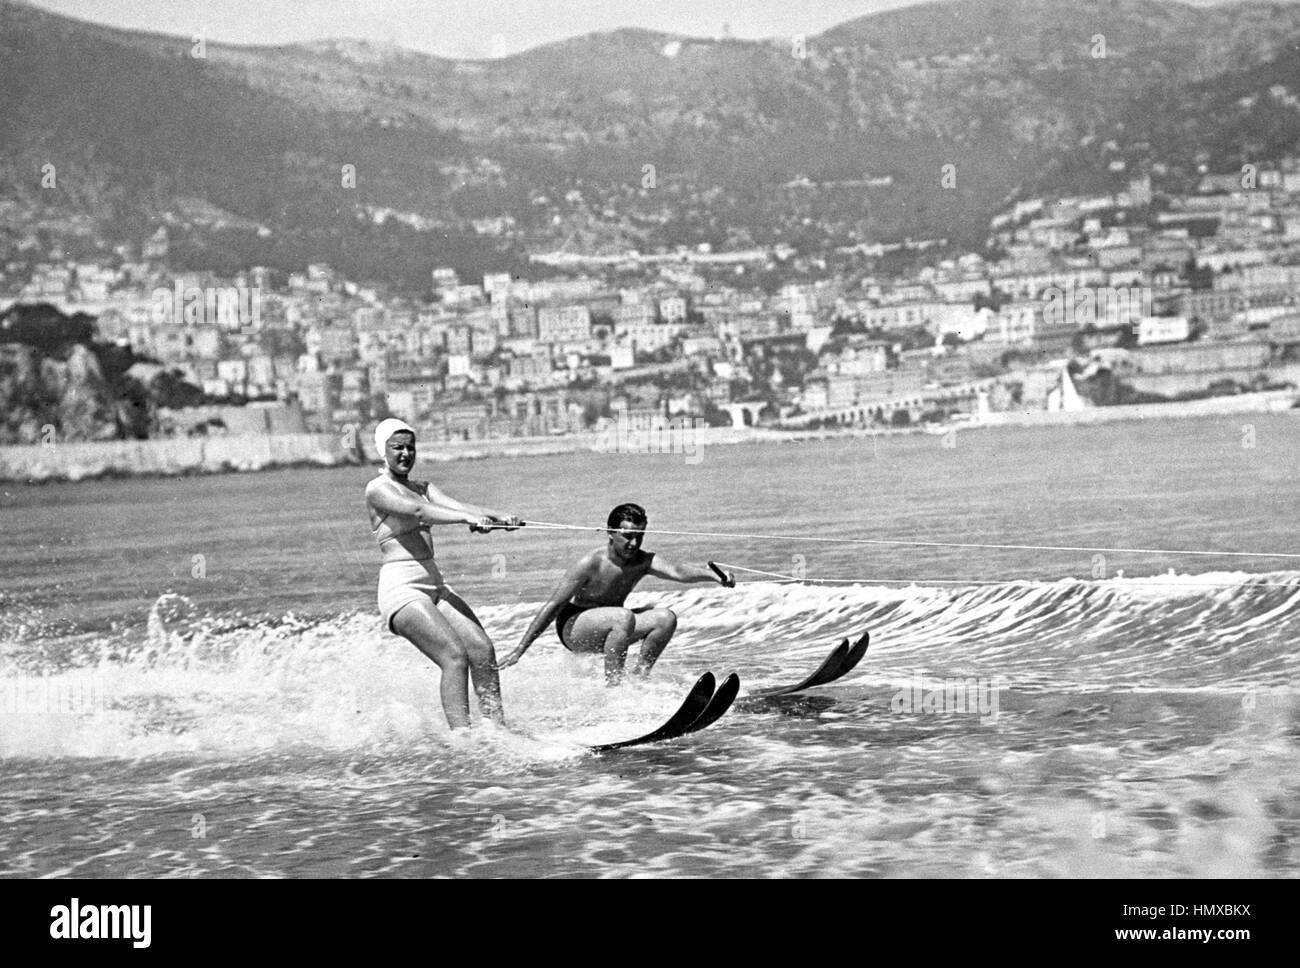 Le Prince Rainier de Monaco, 15, le ski nautique avec la Princesse Antoinette, 17. Date exacte inconnue. Banque D'Images